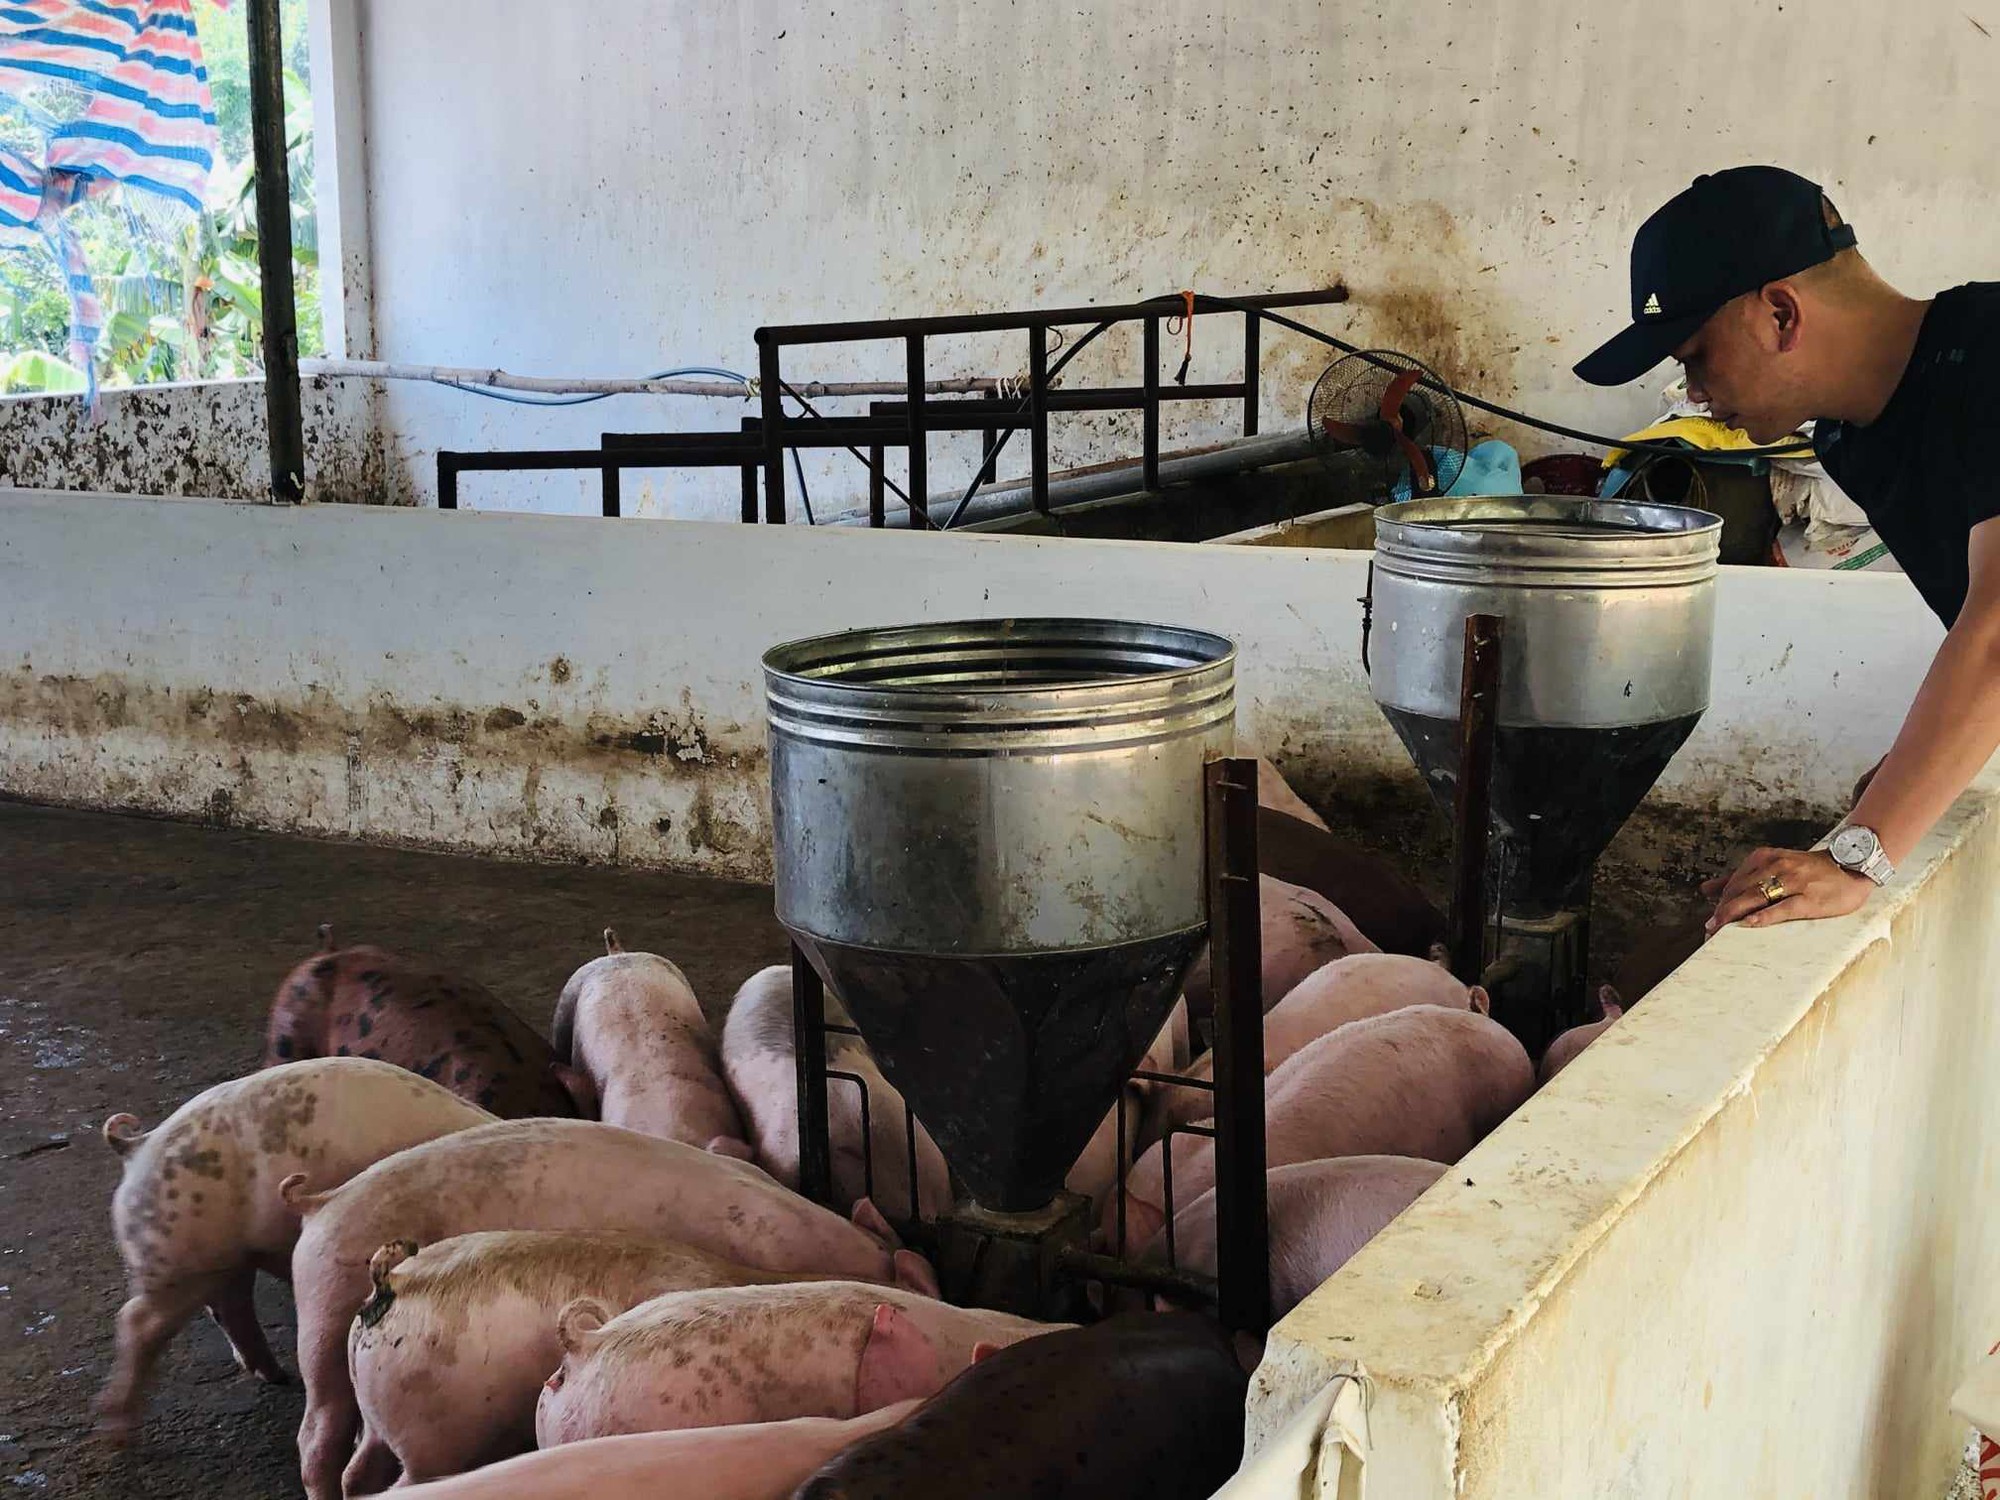 Chăn nuôi lợn đứng top 5 thế giới, các doanh nghiệp rót hàng tỷ USD vào xây trang trại, nhà máy chế biến - Ảnh 1.